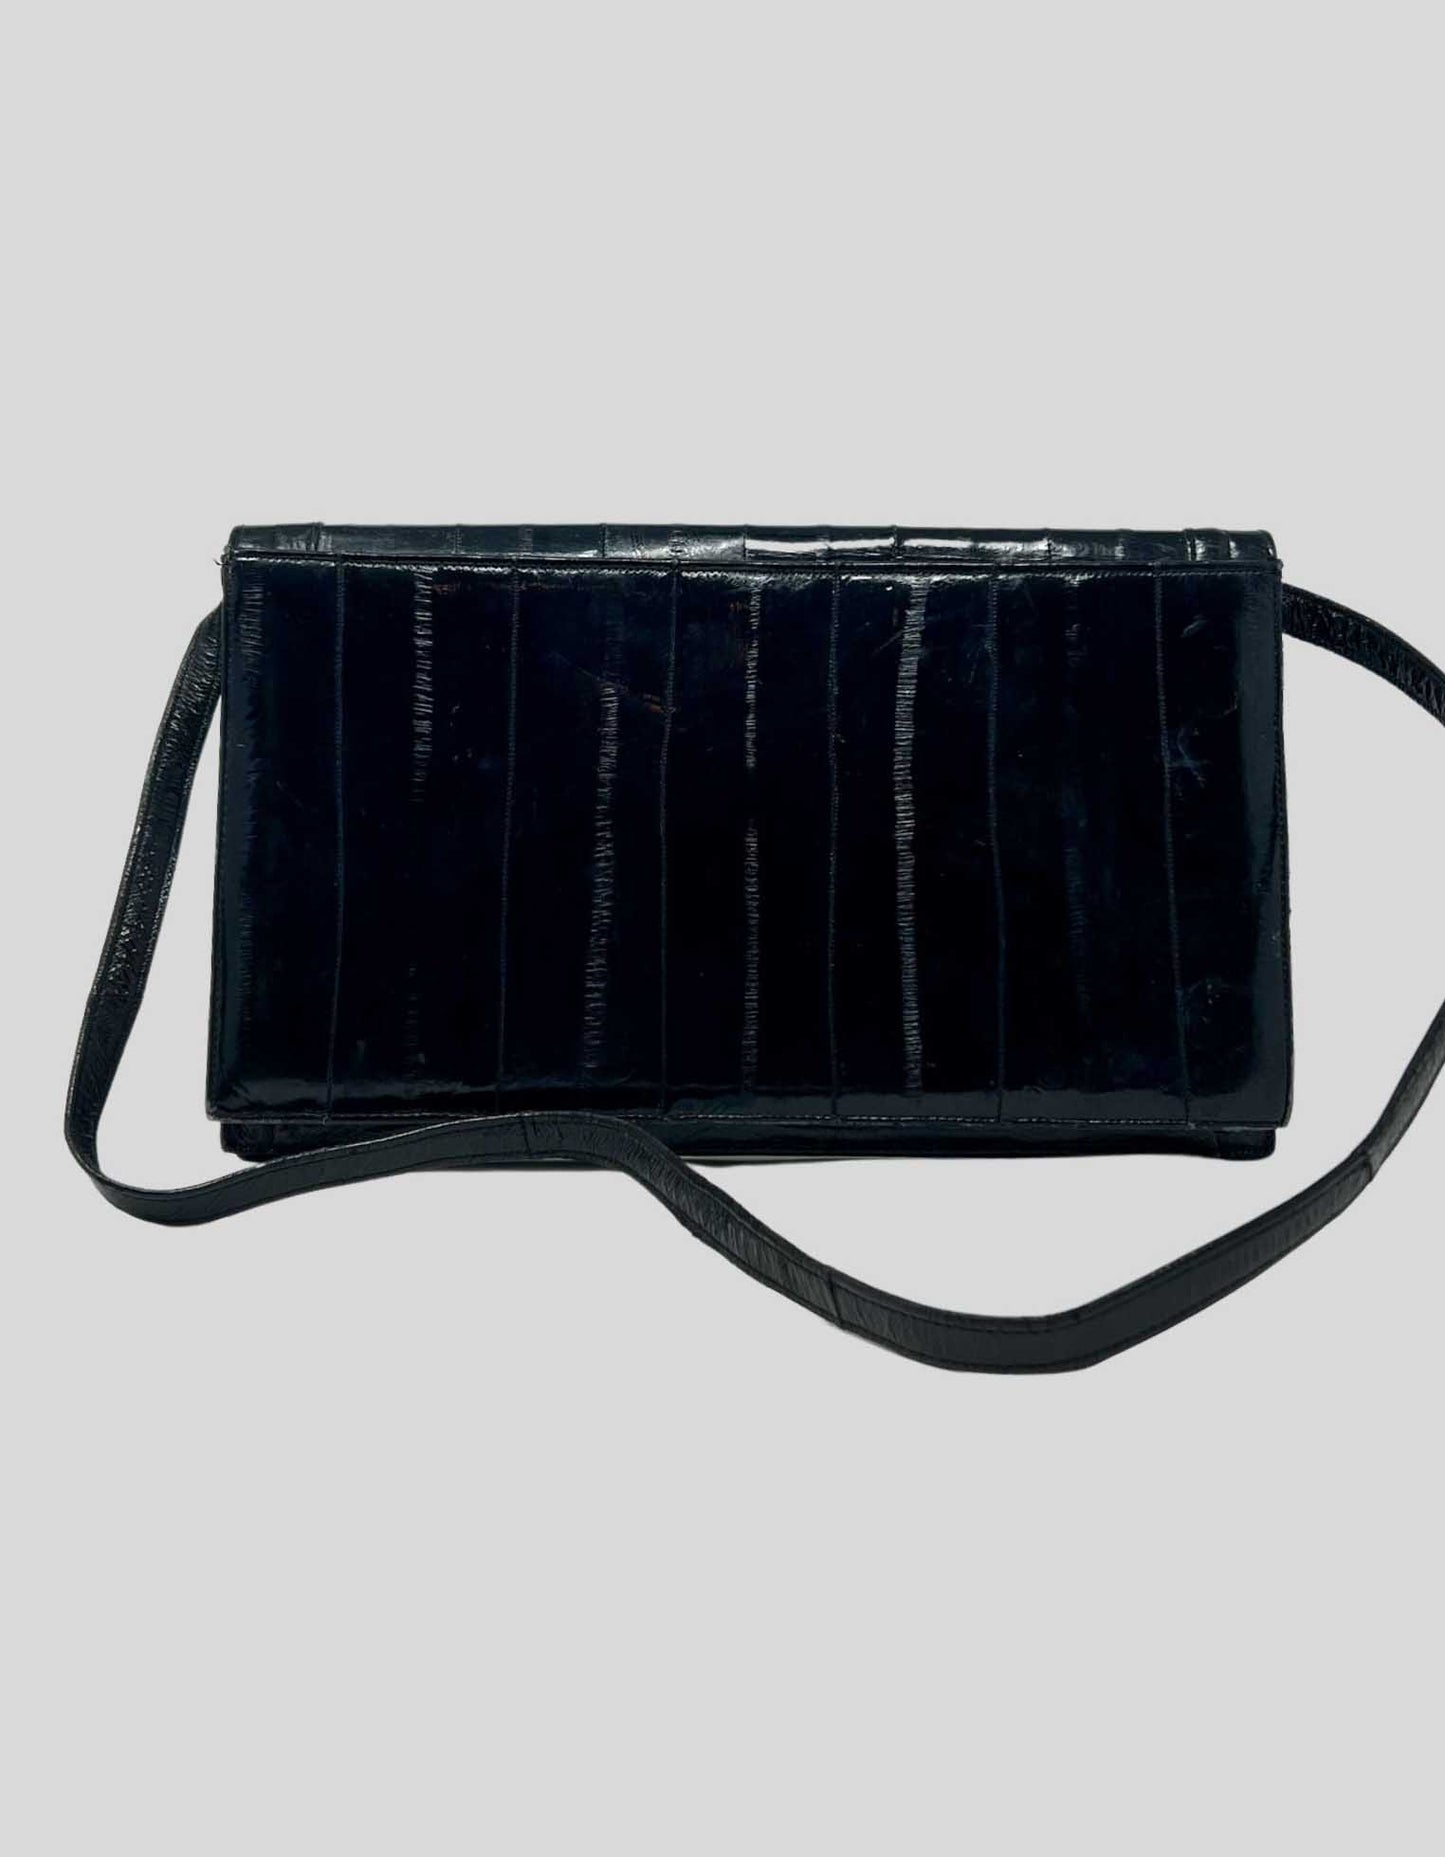 Vintage black genuine eel skin leather shoulder bag and clutch